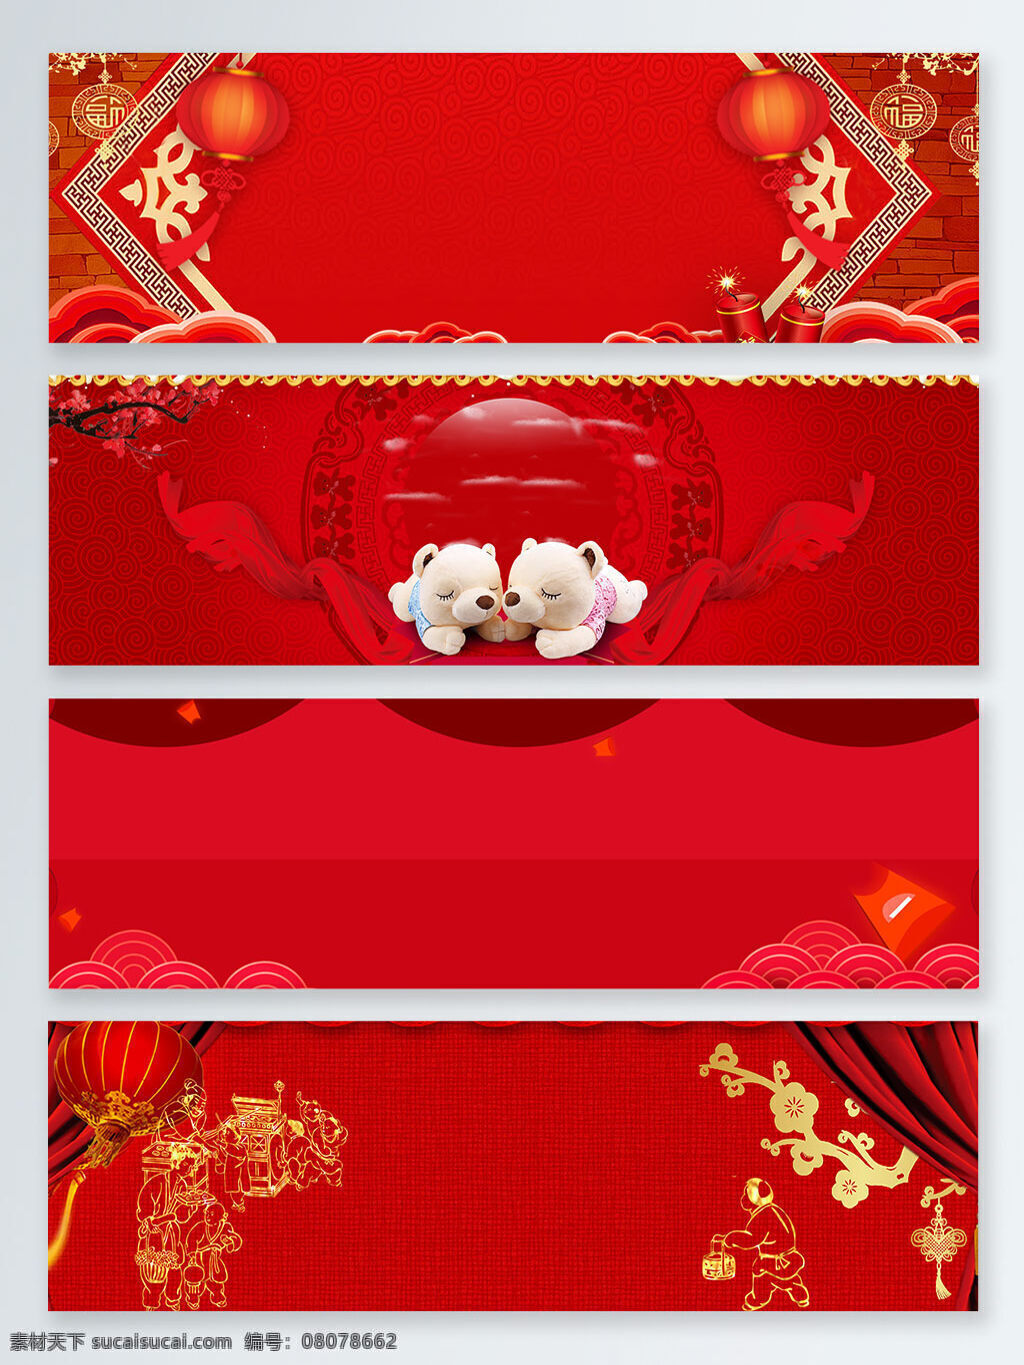 中国 传统节日 新年 元宵节 banner 背景 大红灯笼 红金 红色 皮影 喜庆 中国传统节日 中国风 中国年